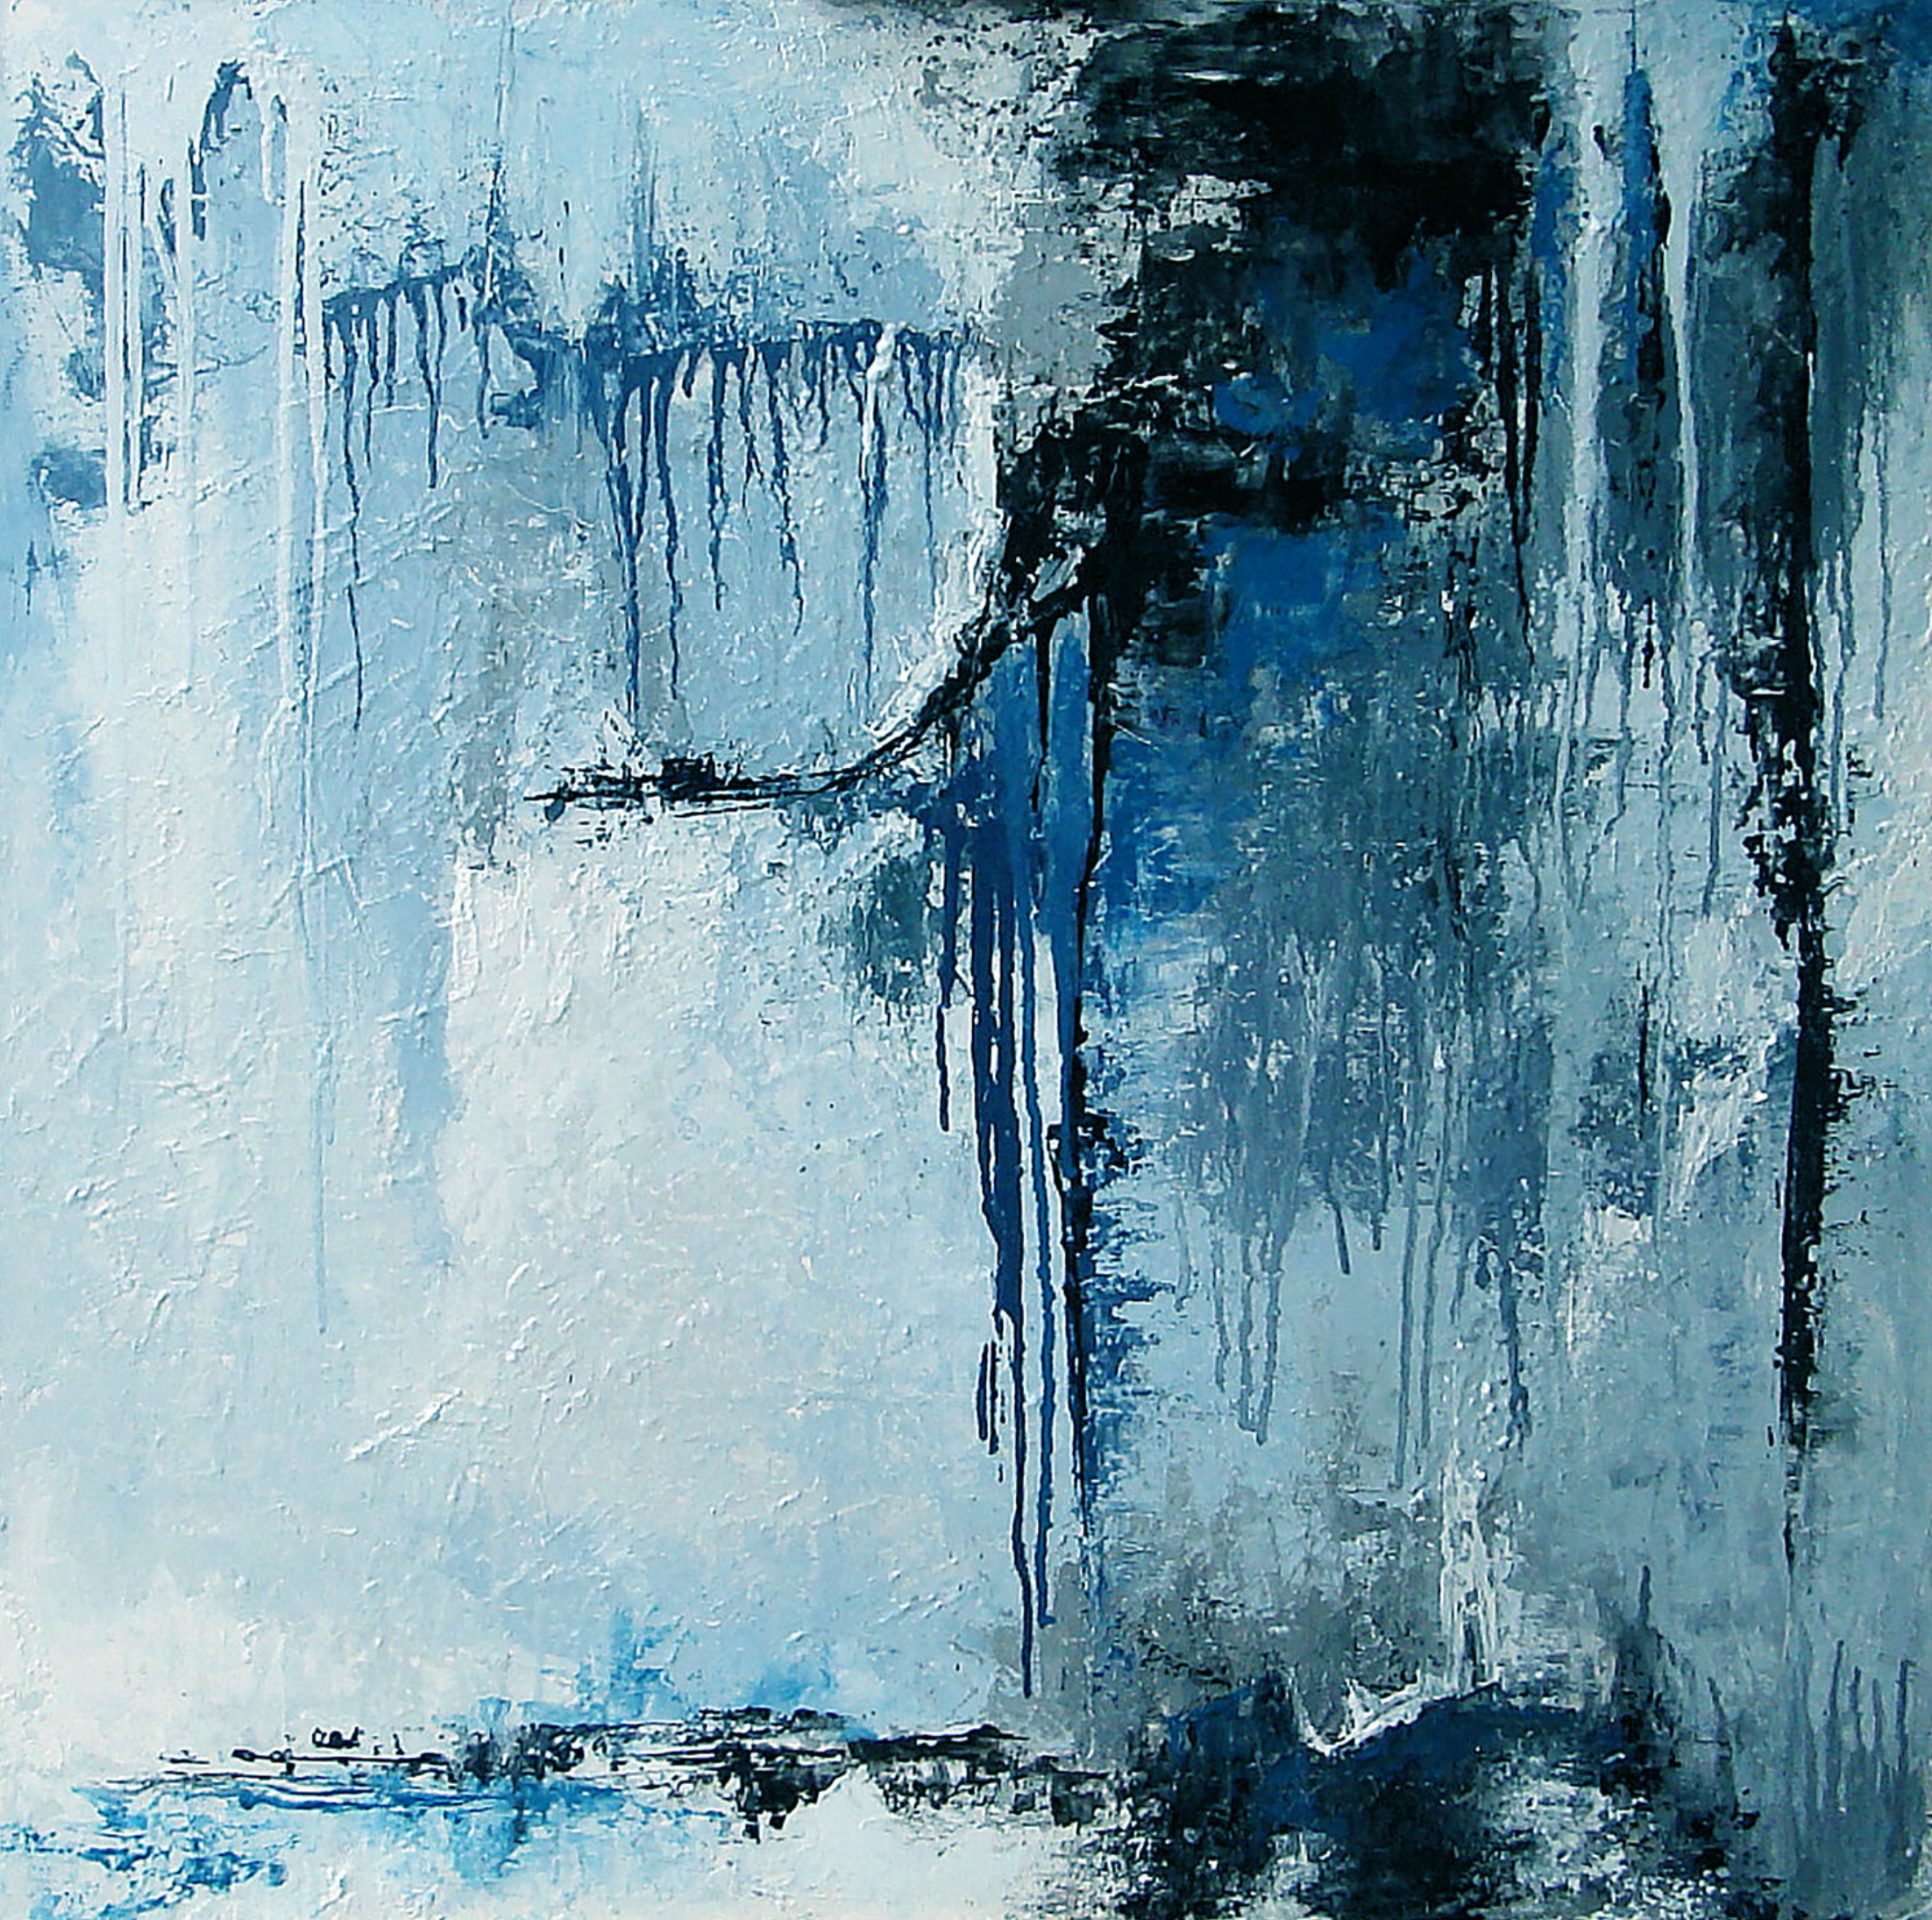 La pintura abstracta "Acier" de Françoise Dugourd-Caput muestra impresiones de metal fundido goteando sobre relieves que recuerdan un muro o un abrupto acantilado de materia gris y azul bordeado de azul noche. Una atmósfera fría